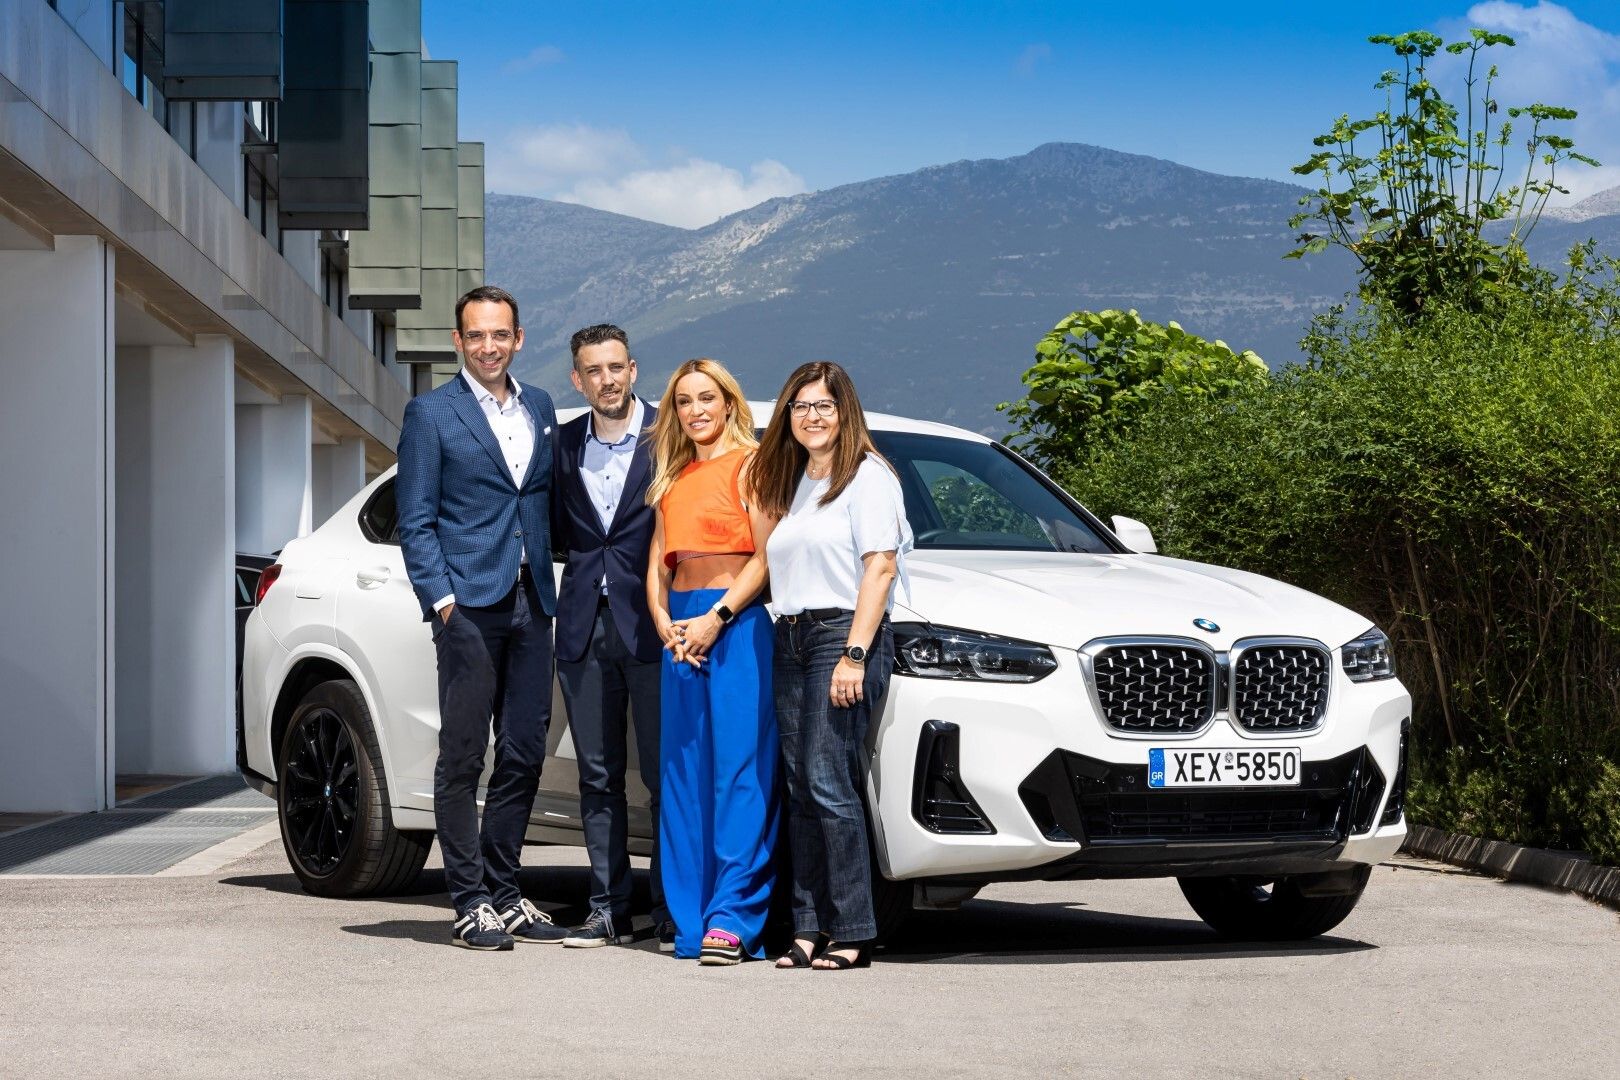 Το BMW Group Hellas στο πλευρό της Καρολίνας Πελενδρίτου!